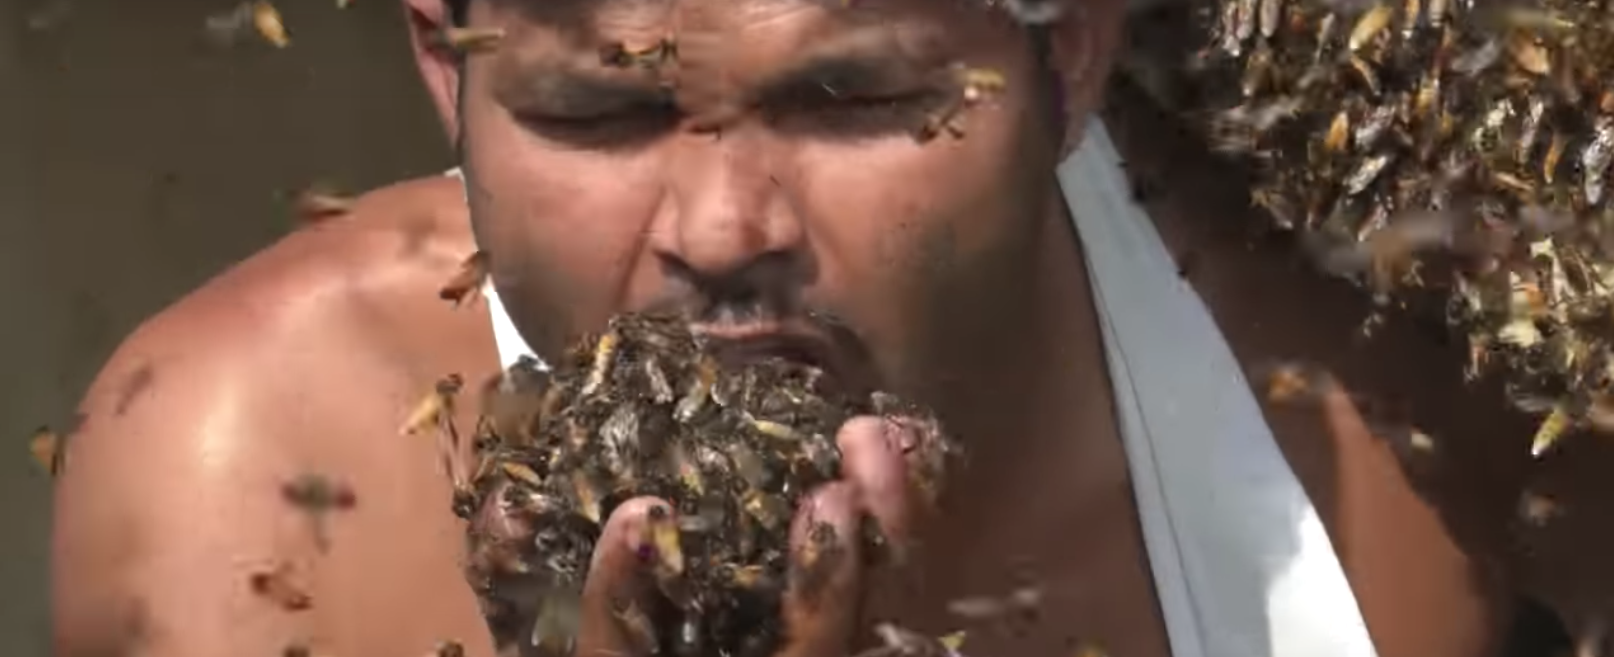 فيديو يشعل مواقع التواصل... رجل يلتهم آلاف النحلات حيّة!